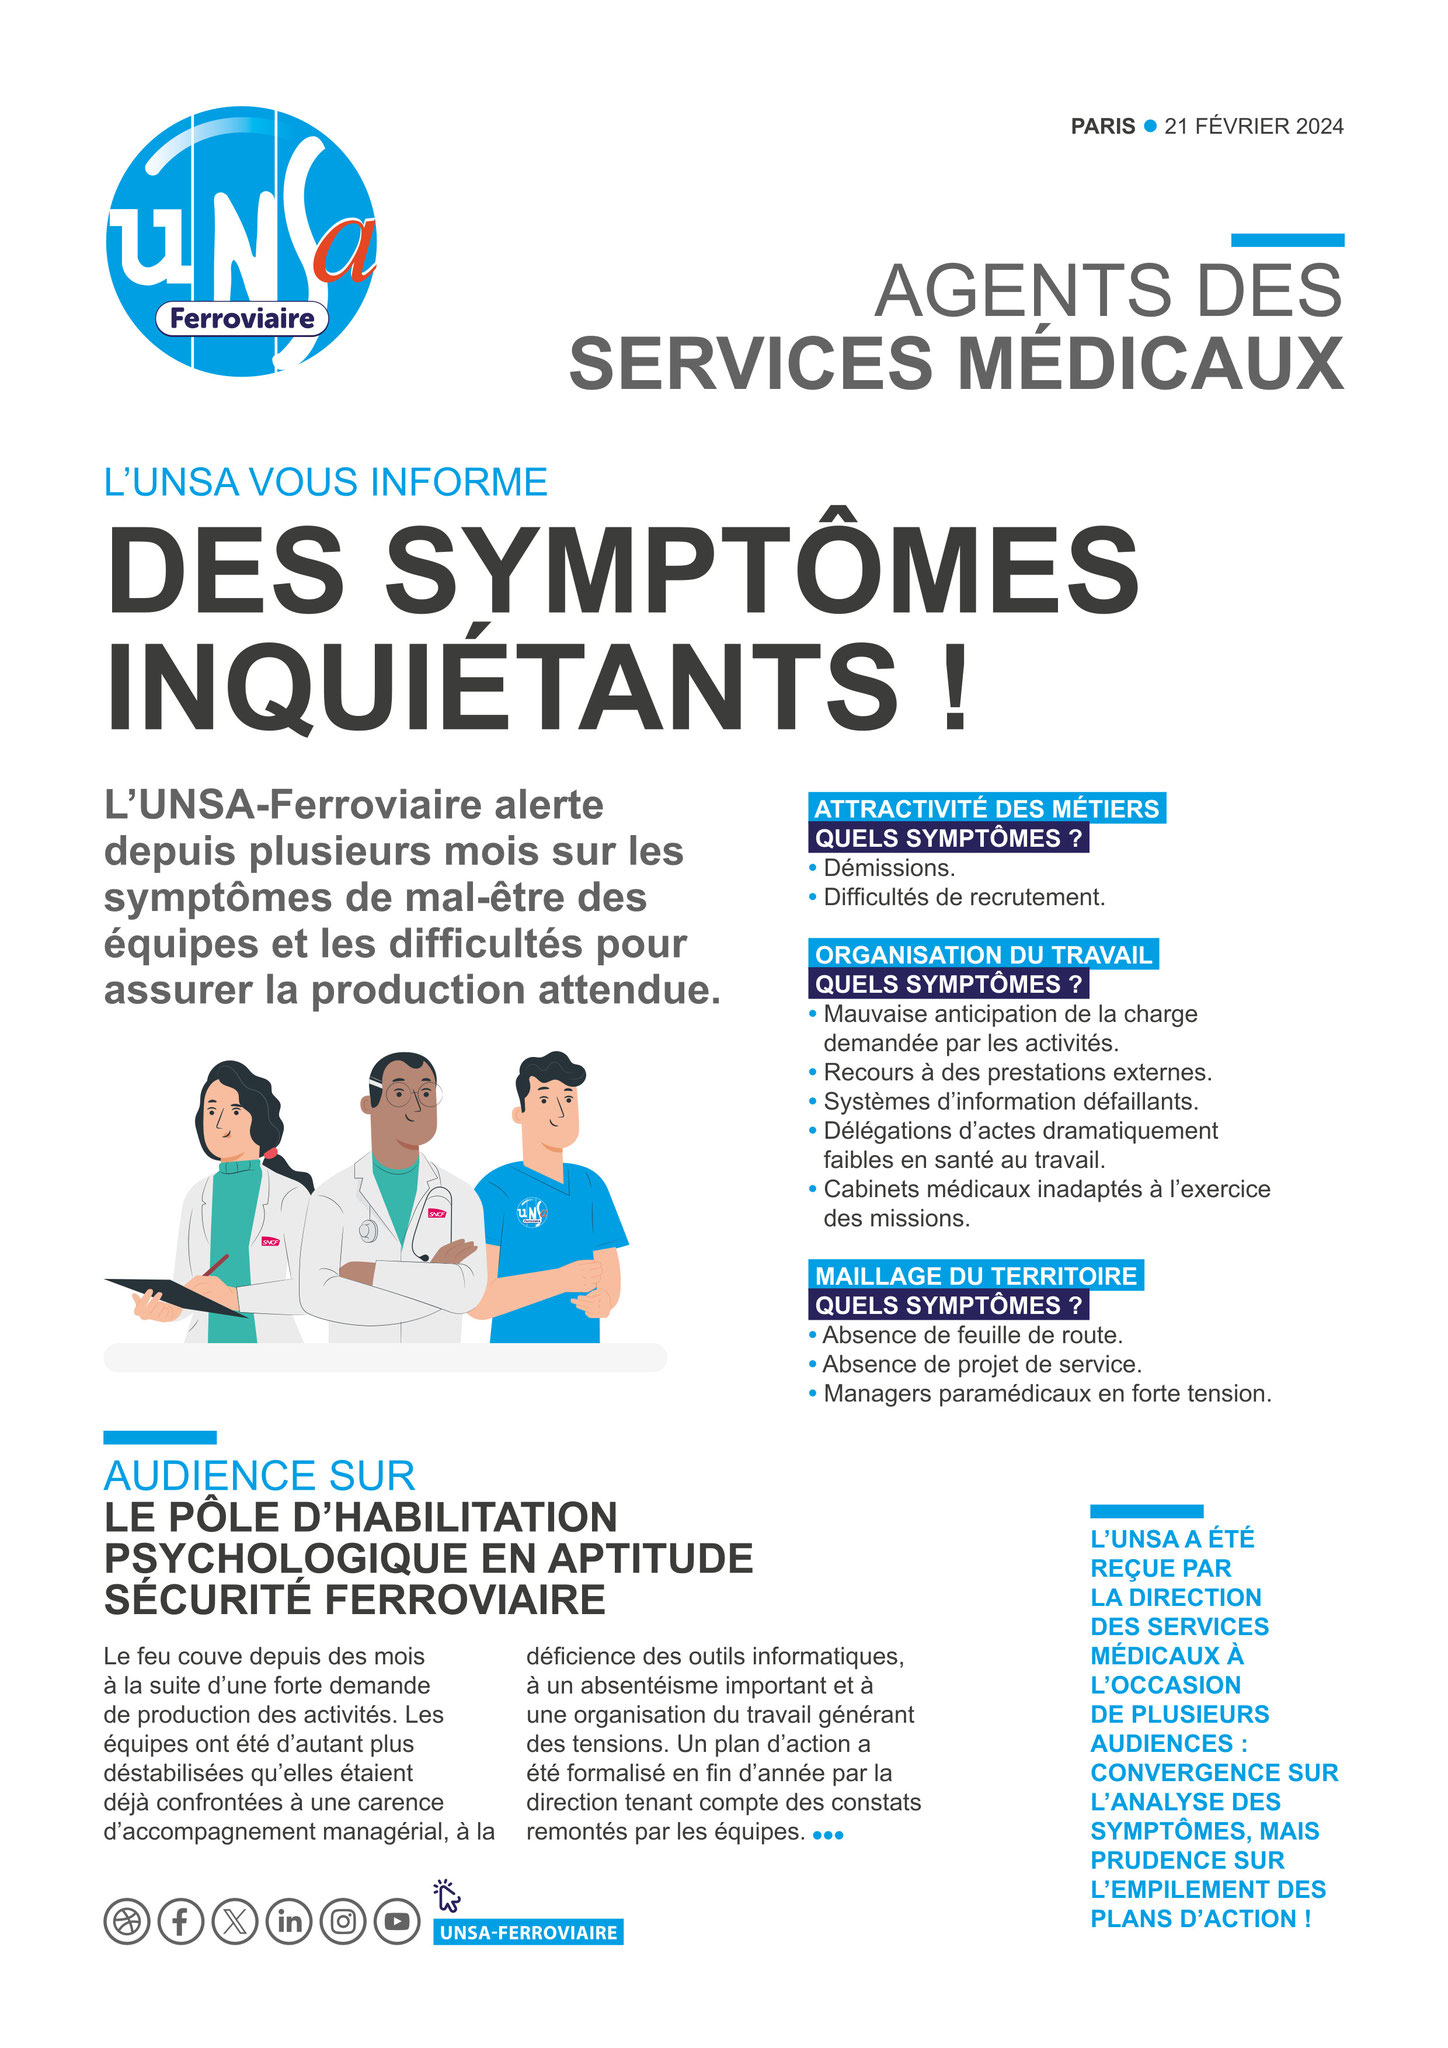 Services Médicaux